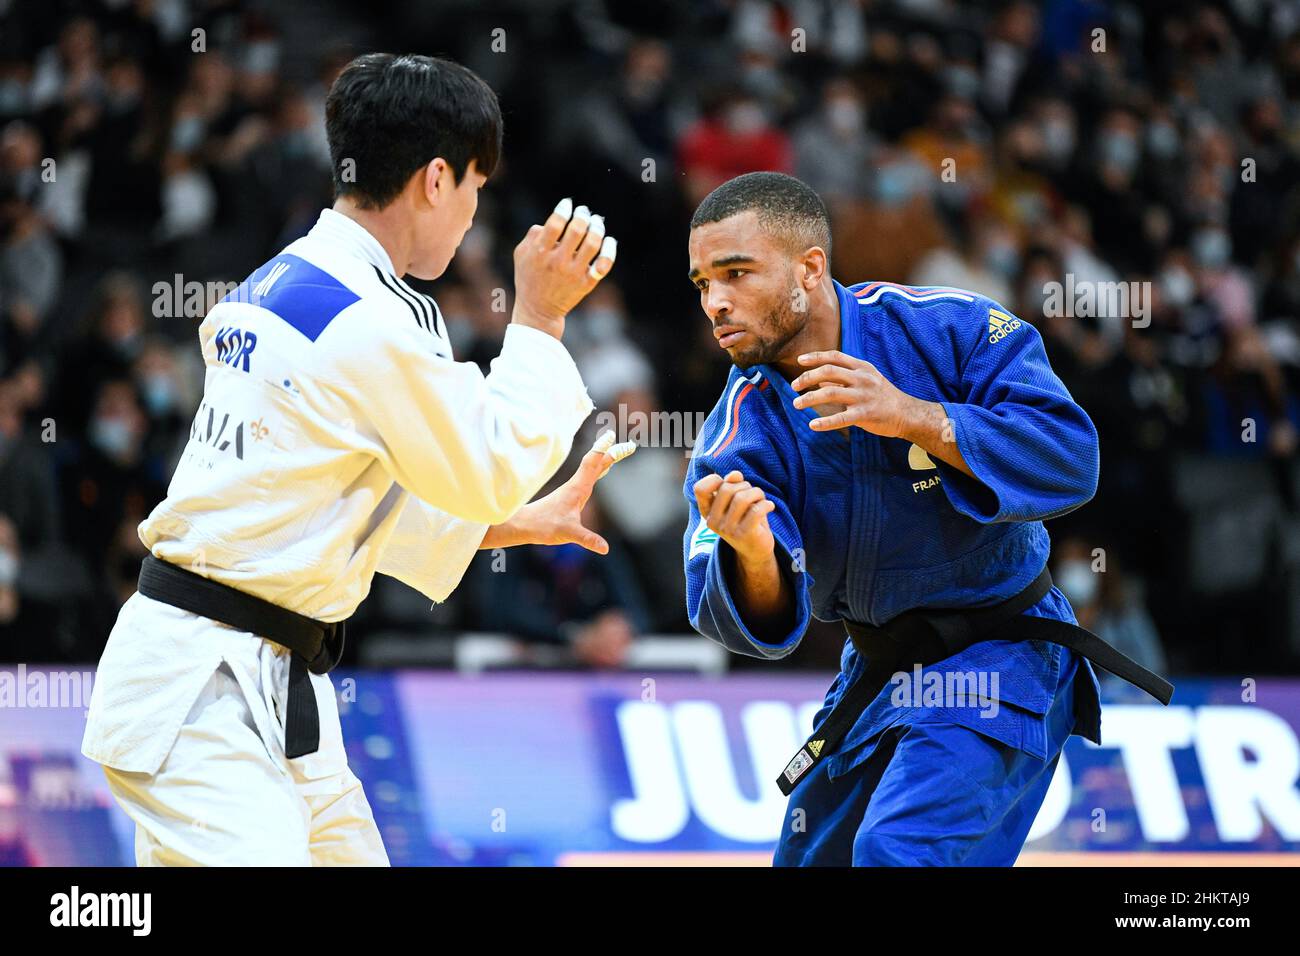 -66 kg hommes, Daikii Bouba participe au Grand Chelem de Paris 2022, IJF World Judo Tour le 5 février 2022 à l'Accor Arena de Paris, France - photo Victor Joly / DPPI Banque D'Images